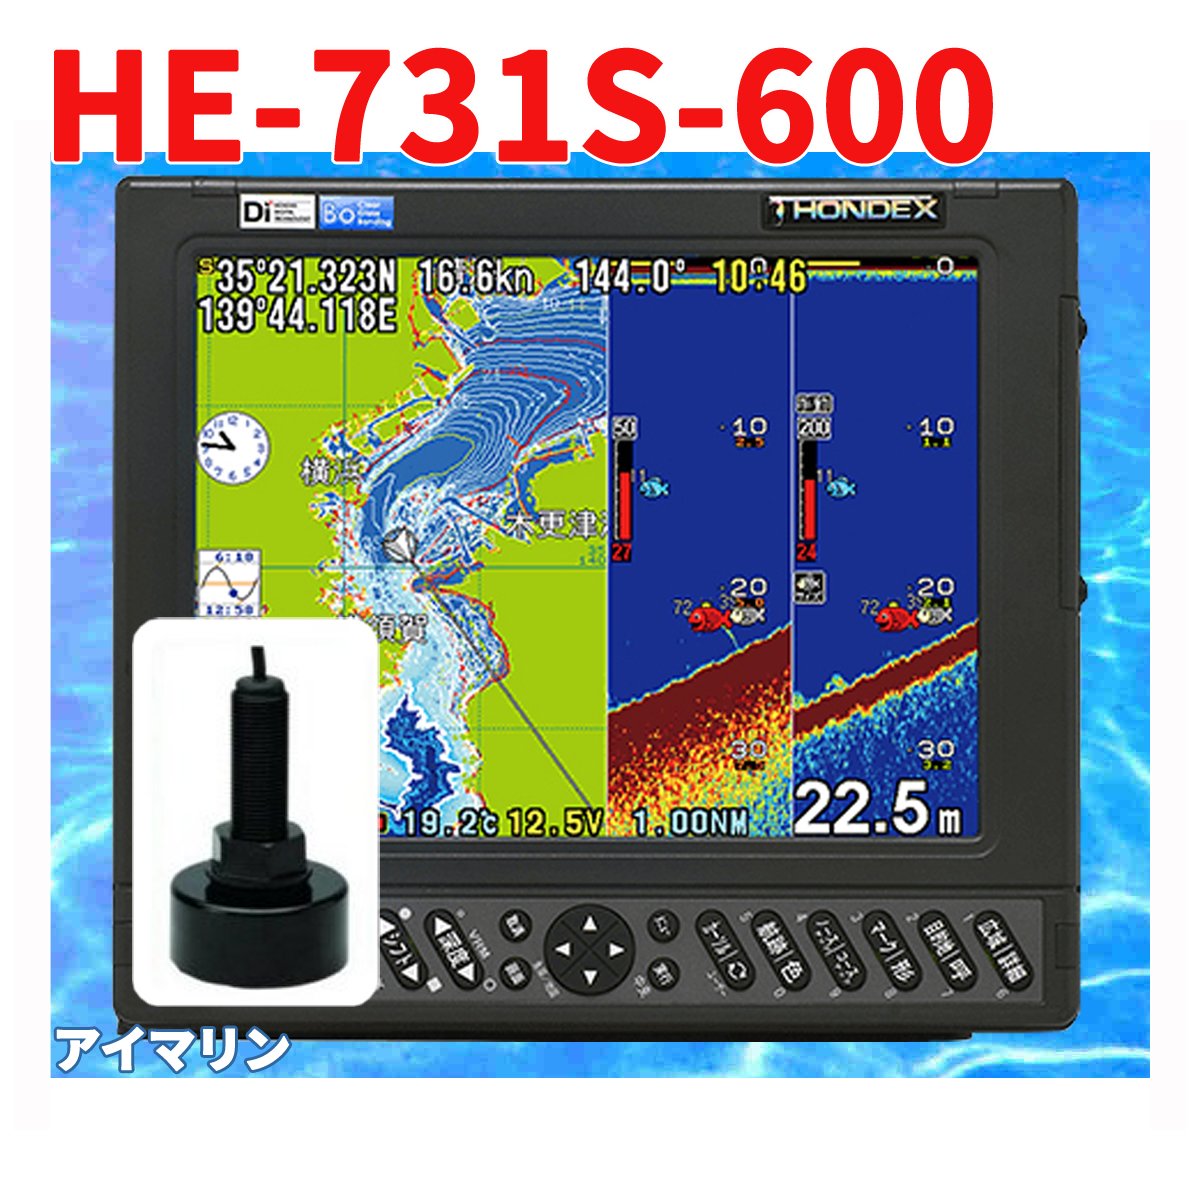 5/16 在庫あり 魚群探知機 HONDEX HE-731S 600w TD28 振動子付き GPS 魚探 アンテナ内蔵 ホンデックス